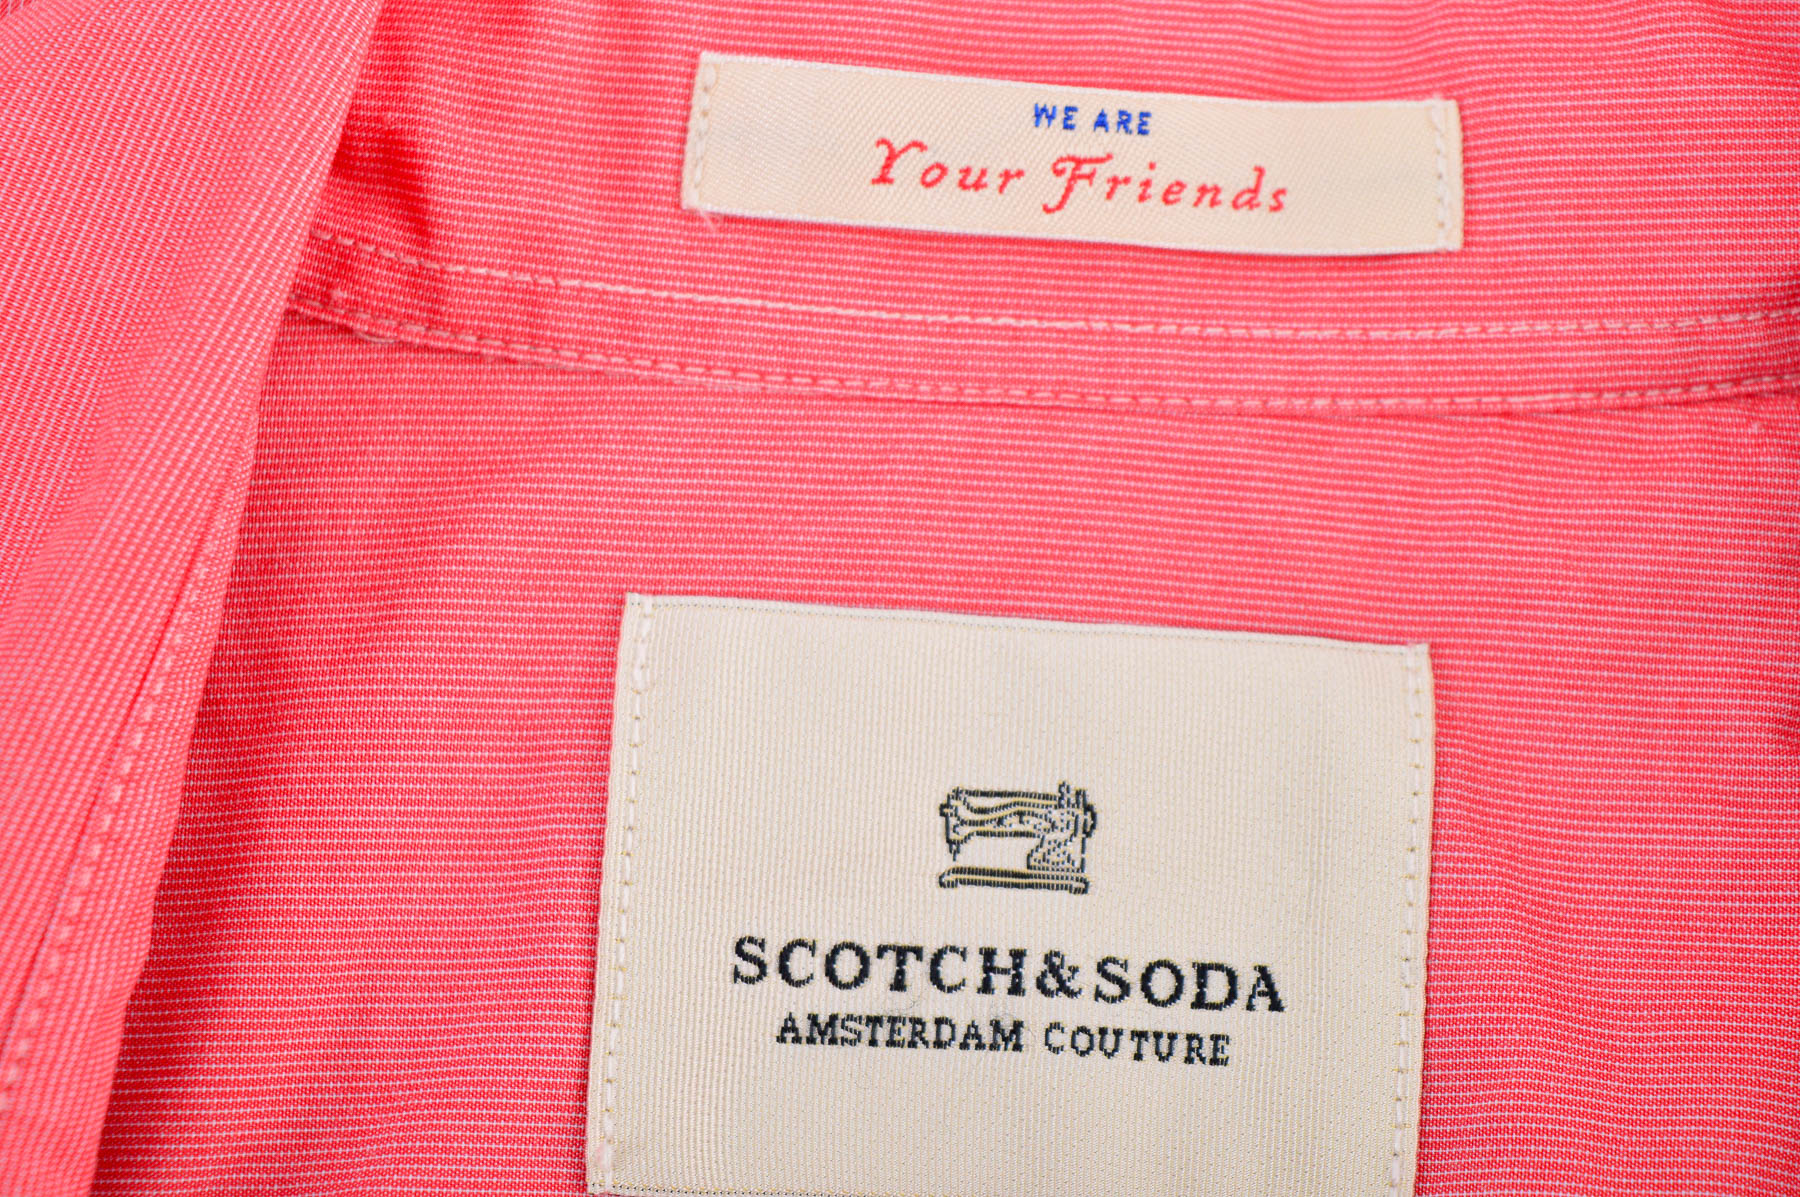 Ανδρικό πουκάμισο - SCOTCH & SODA - 2